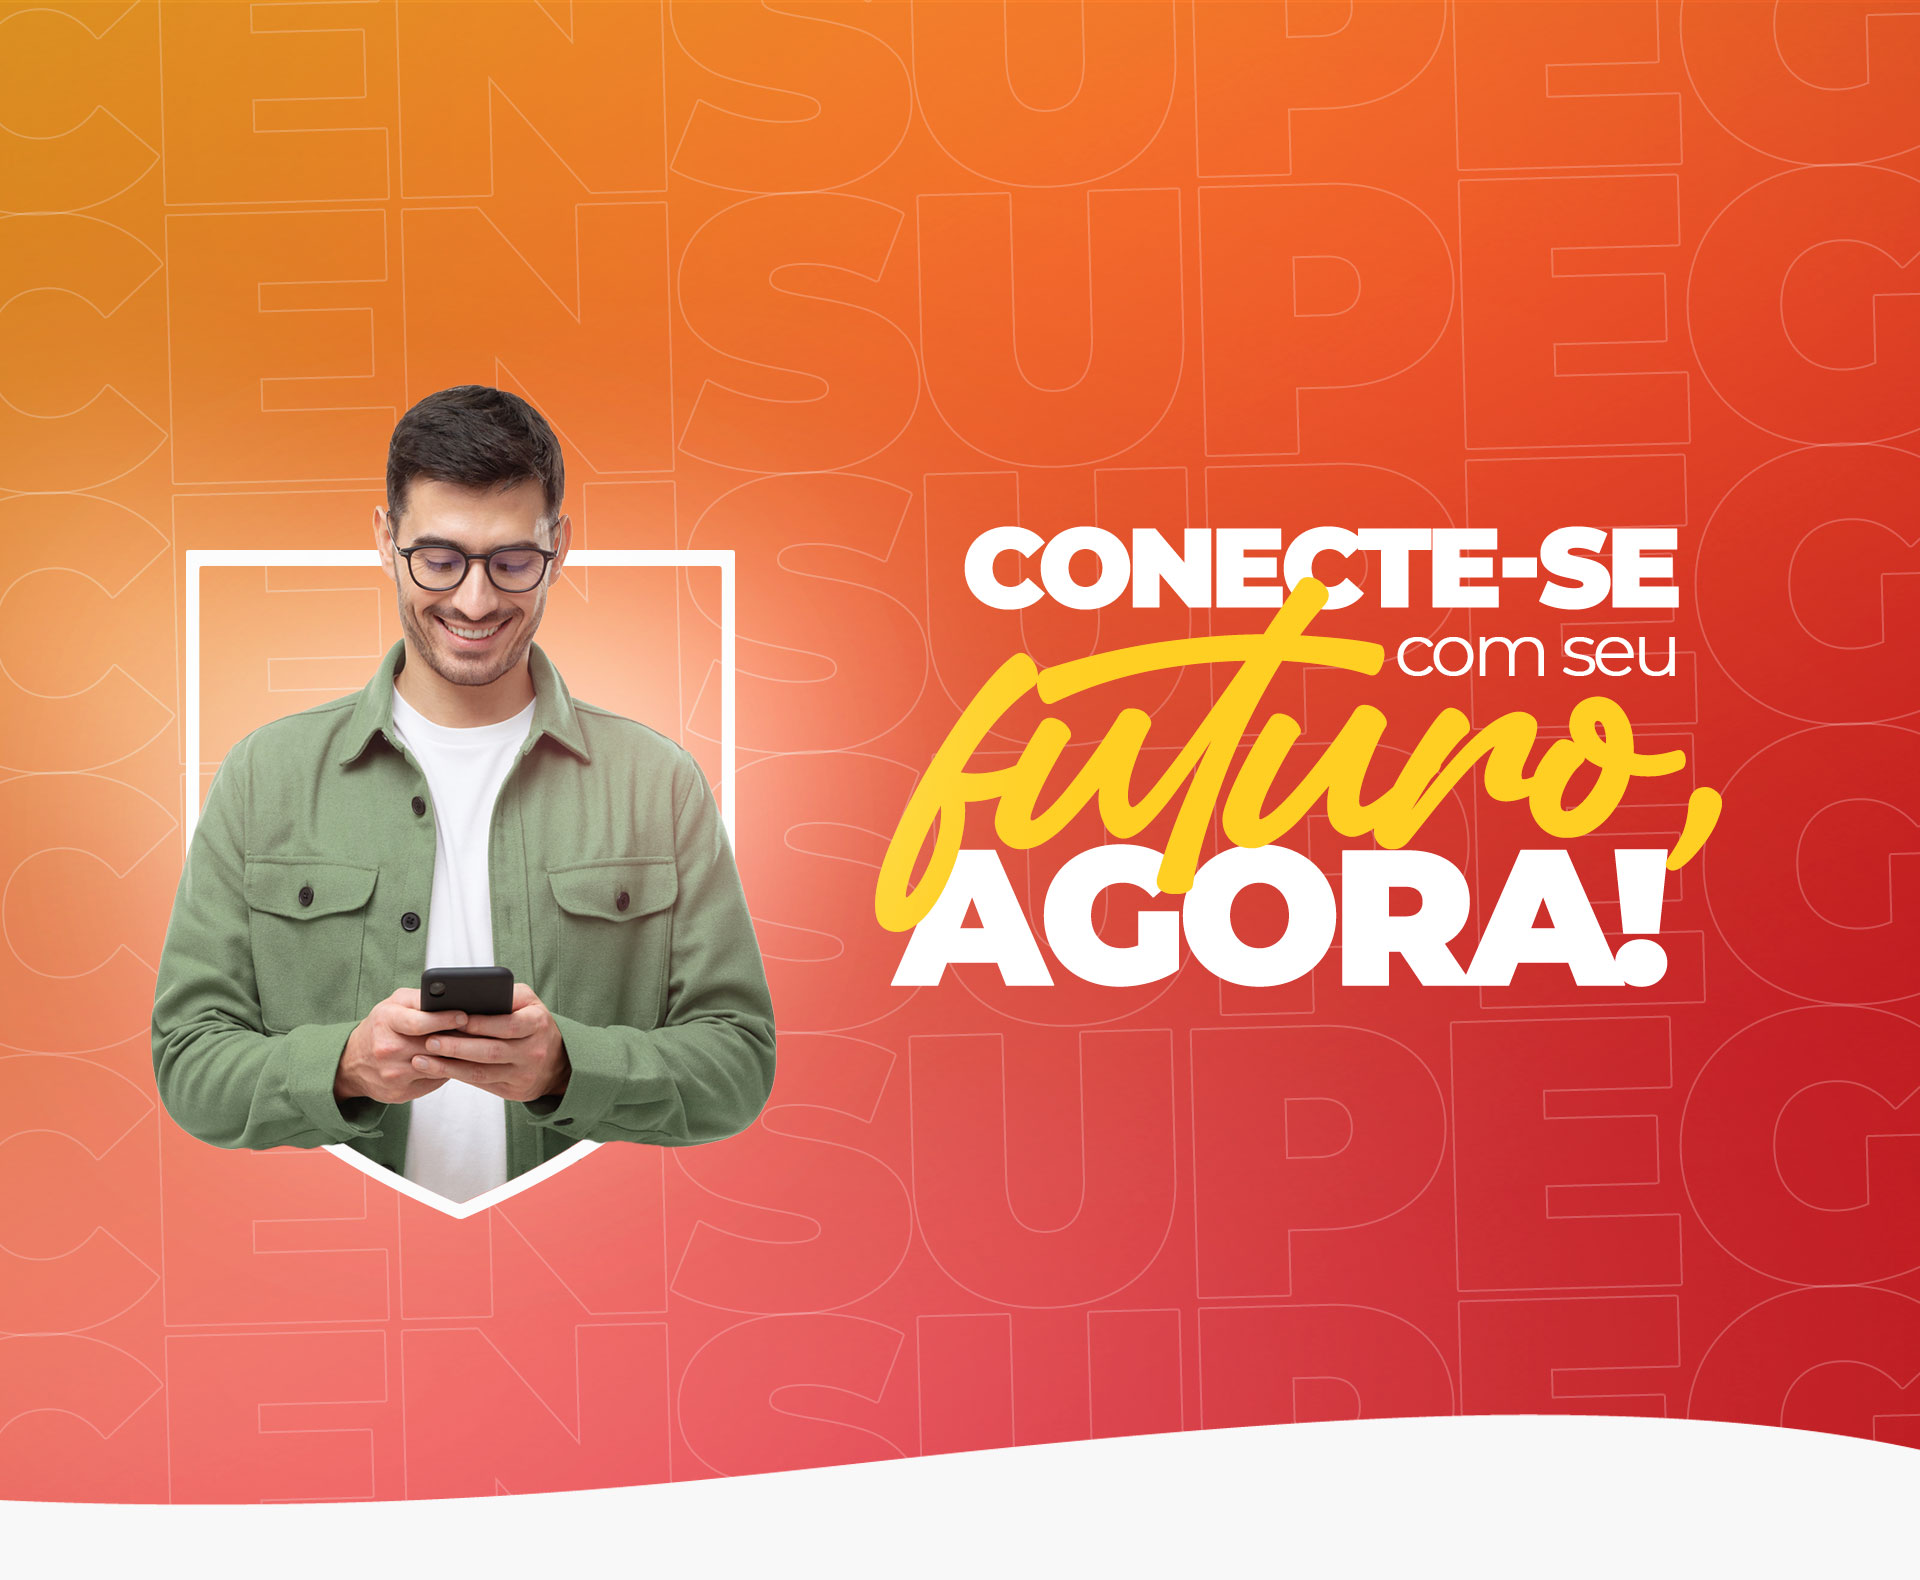 Banner com fundo degrade laranja e vermelho, do lado esquerdo imagem de 5 pessoas segurando um celular em mão alterando entre eles e ao lado direito escrito a frase: Conecte-se com seu futuro agora!